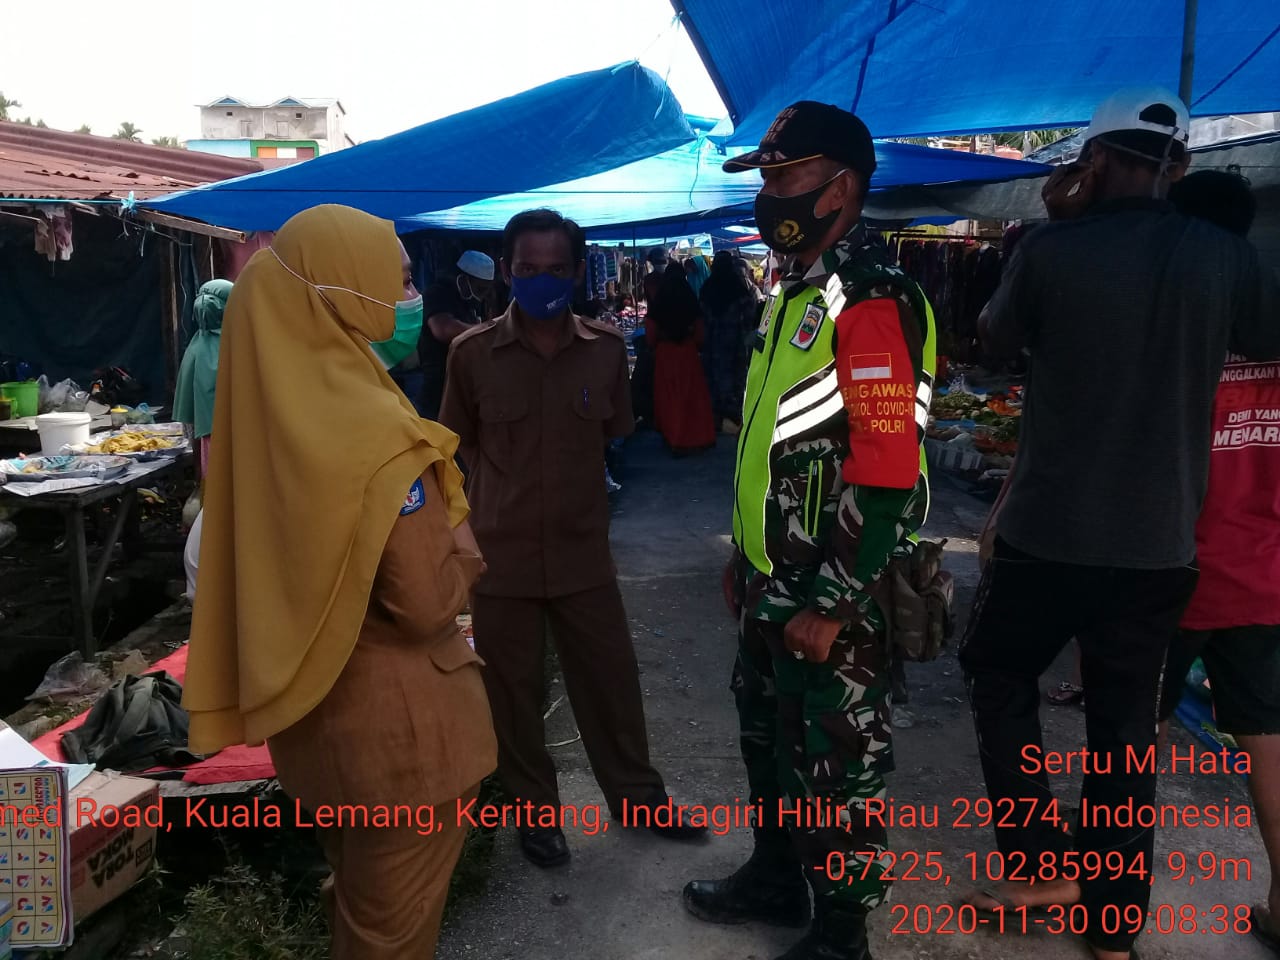 Sertu M Hatta Lakukan Penegakan Protkes di Pasar Kuala Lemang